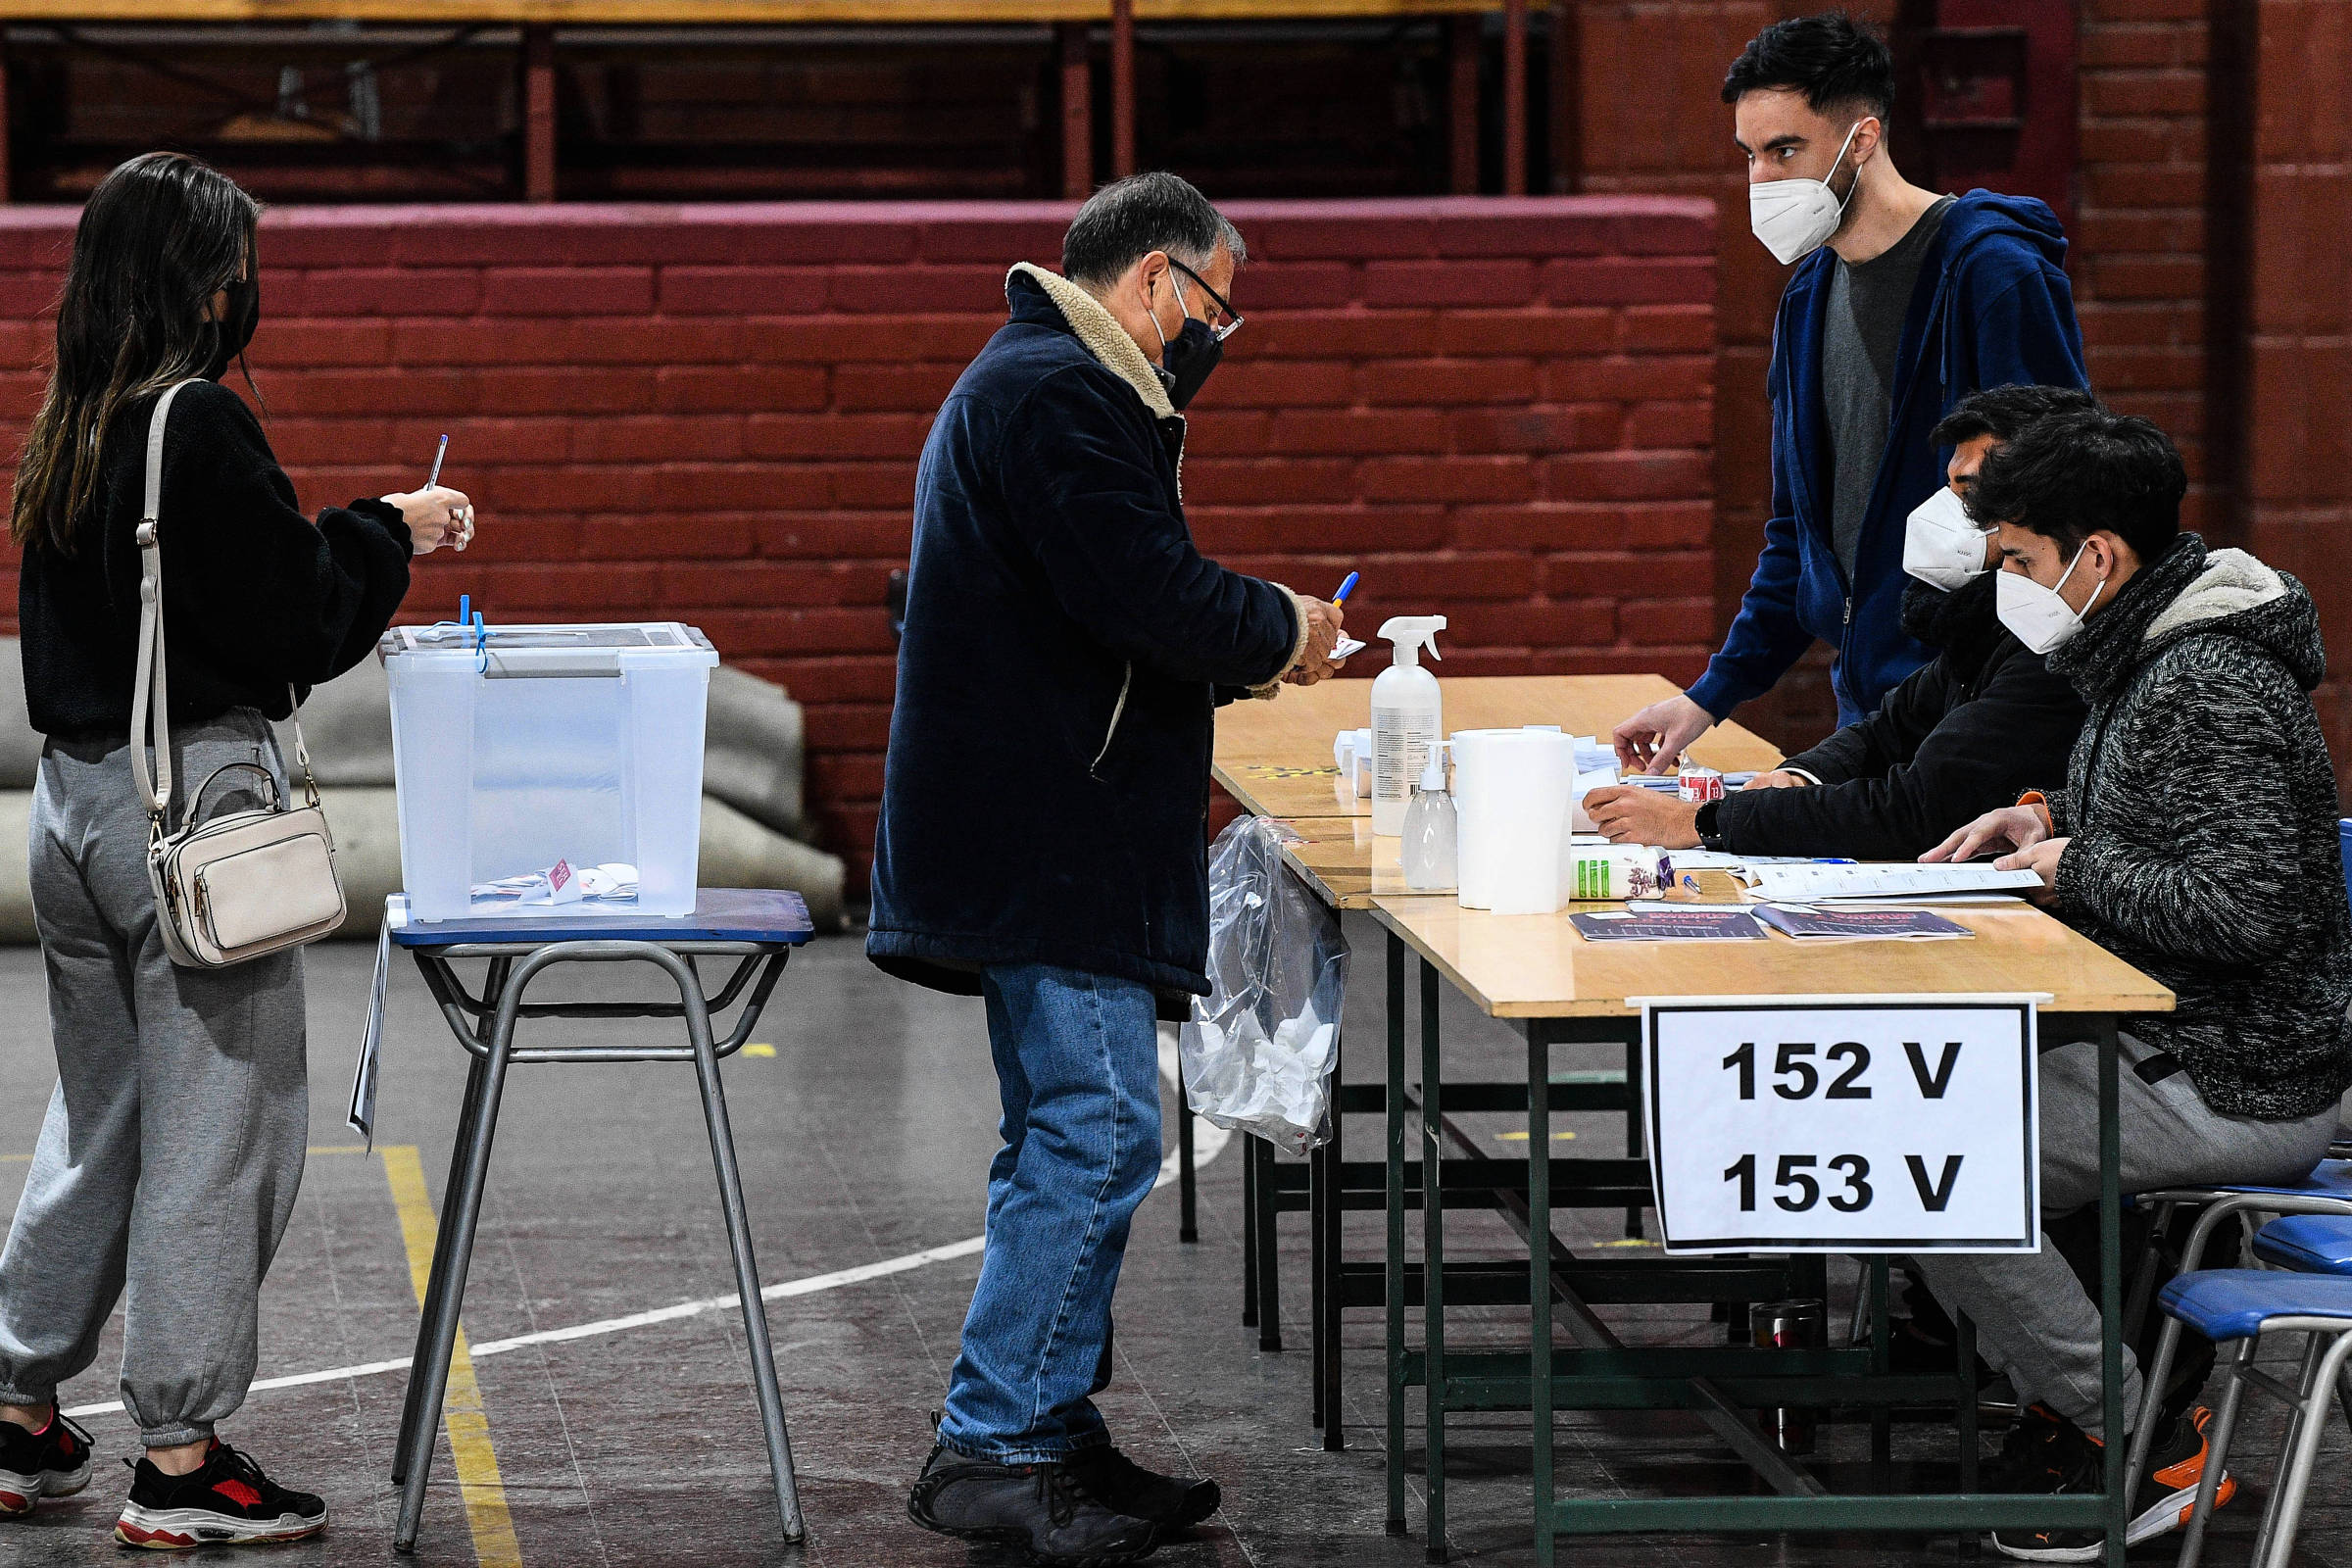 Dos candidatos inesperados ganan las elecciones primarias y compiten por la presidencia de Chile – 18/07/2021 – Mundo